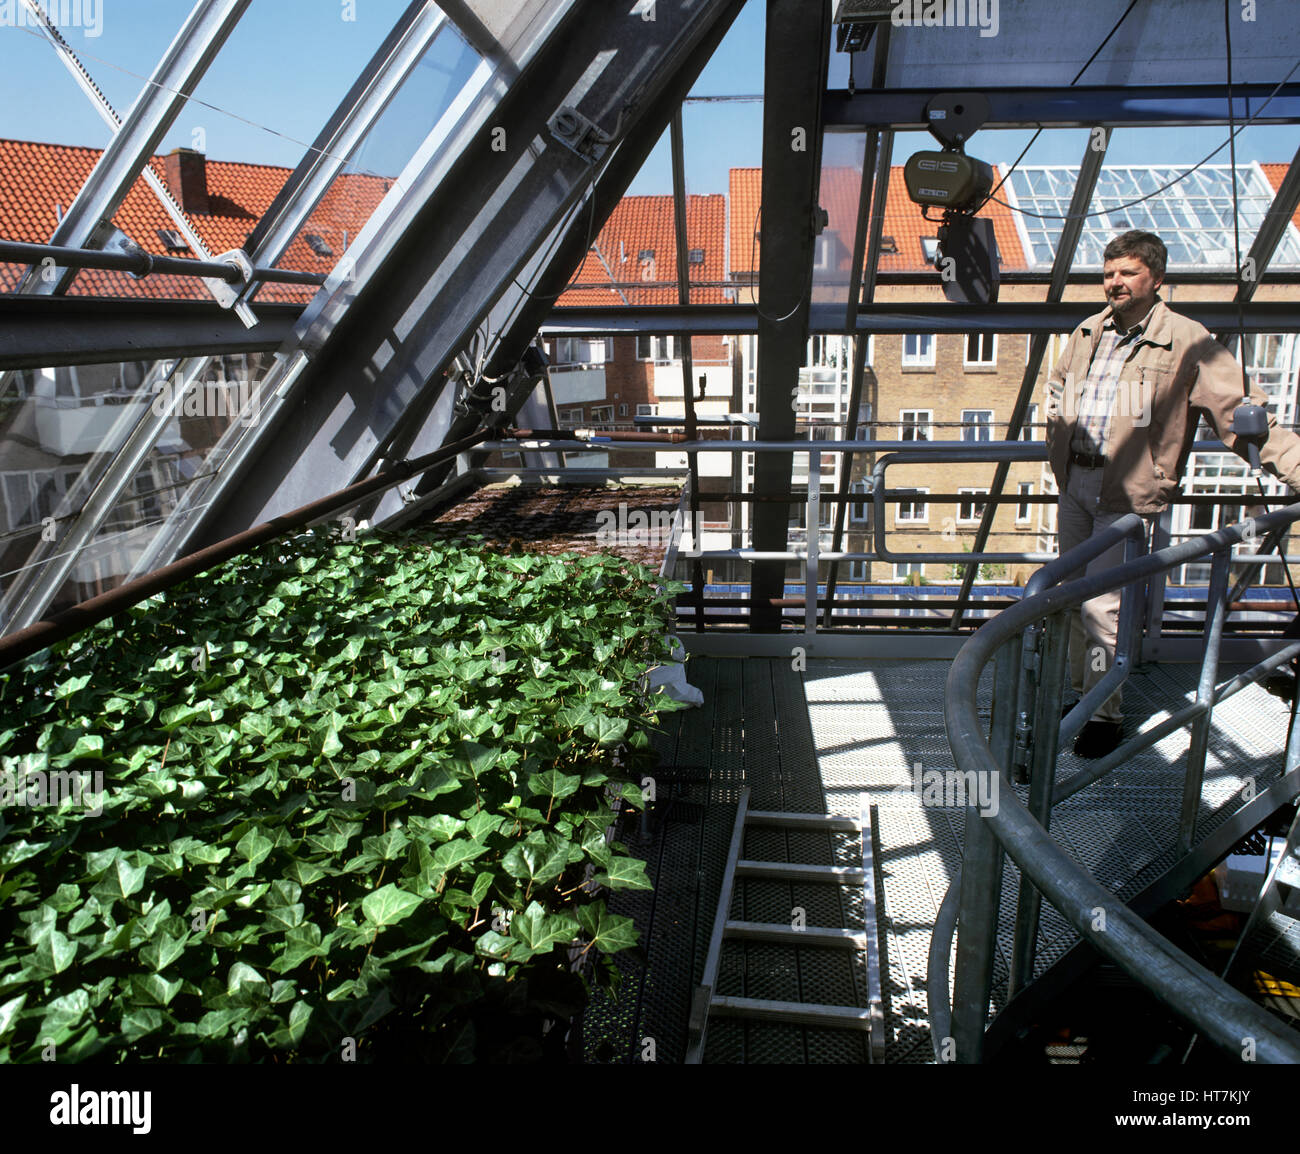 Plantes sont cultivés à des fins commerciales, en utilisant des eaux usées purifiées et traitées, au dernier étage de l'Bioworks, Kolding, Danemark. Banque D'Images